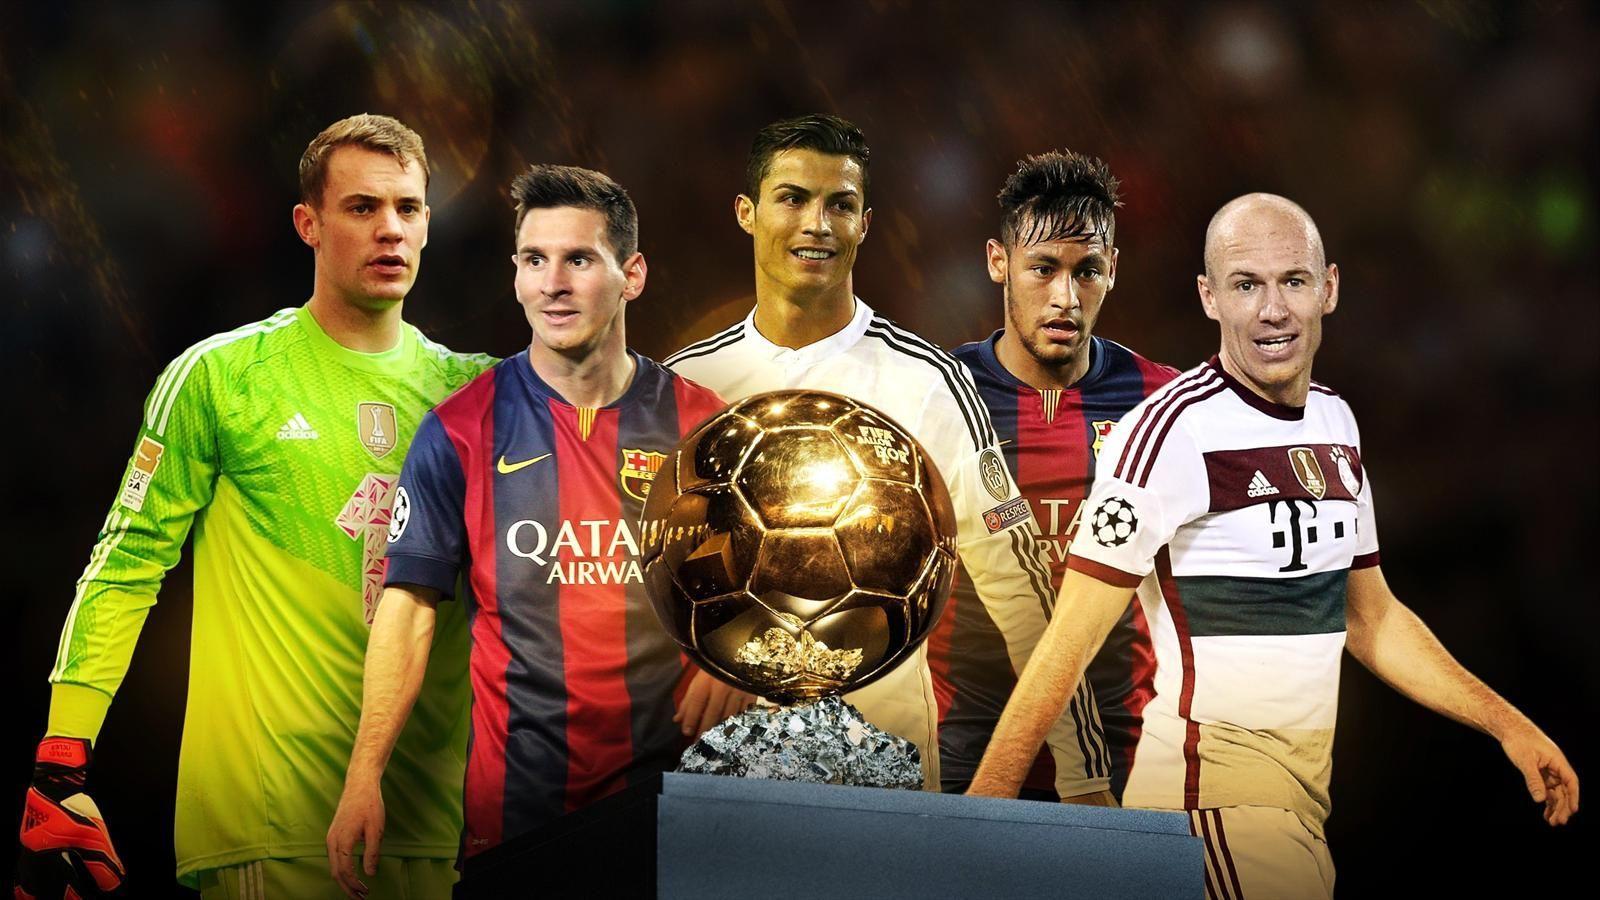 Xabi Alonso: Manuel Neuer deserves Ballon d&;Or 2014